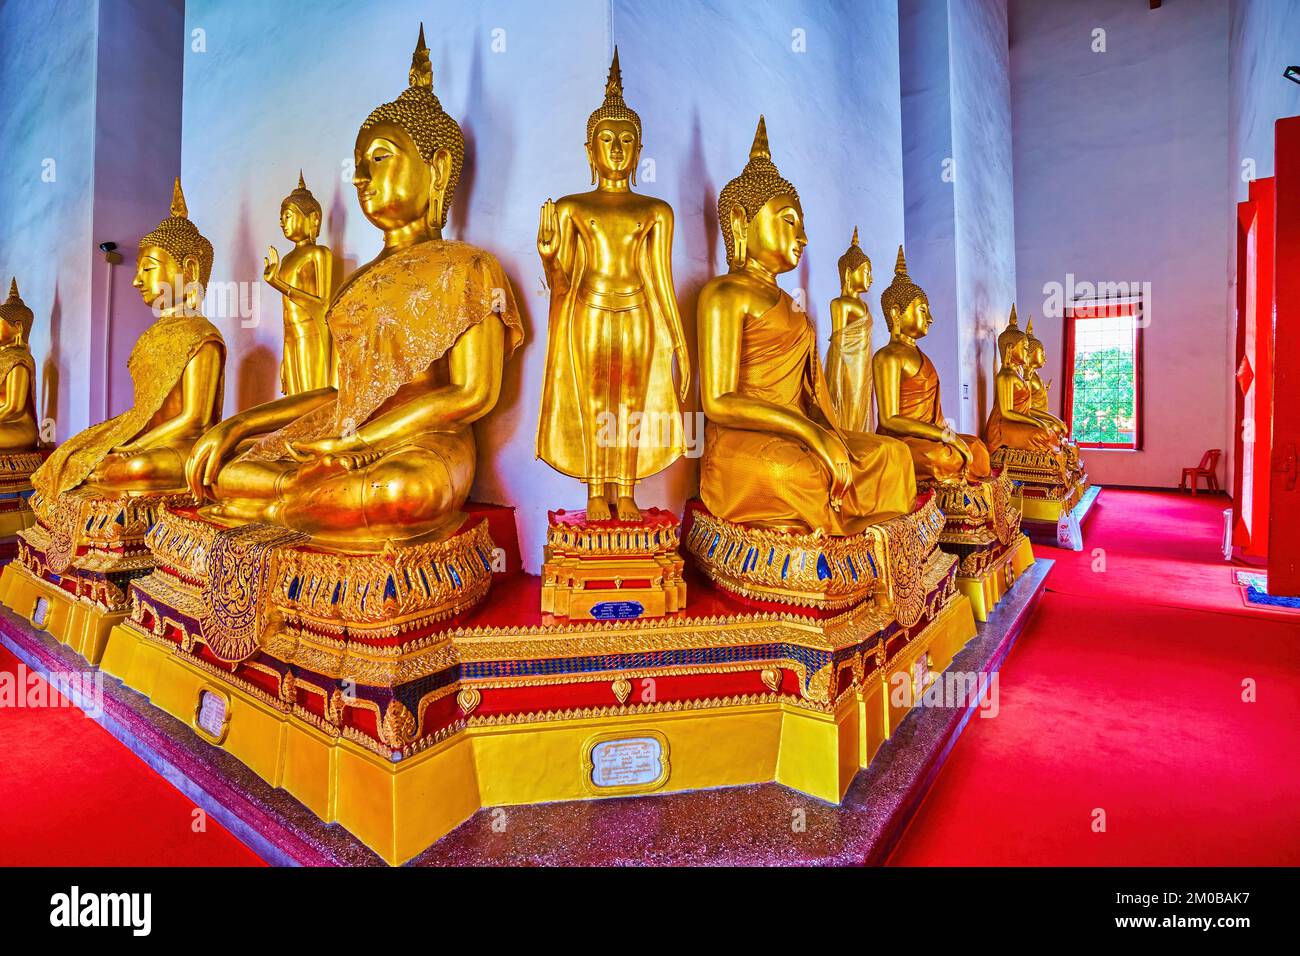 BANGKOK, THAILAND - 23. APRIL 2019: Die Bilder der Goldenen Buddhas im Mondop-Schrein des Wat Mahathat-Tempels, am 23. April in Bangkok, Thailand Stockfoto